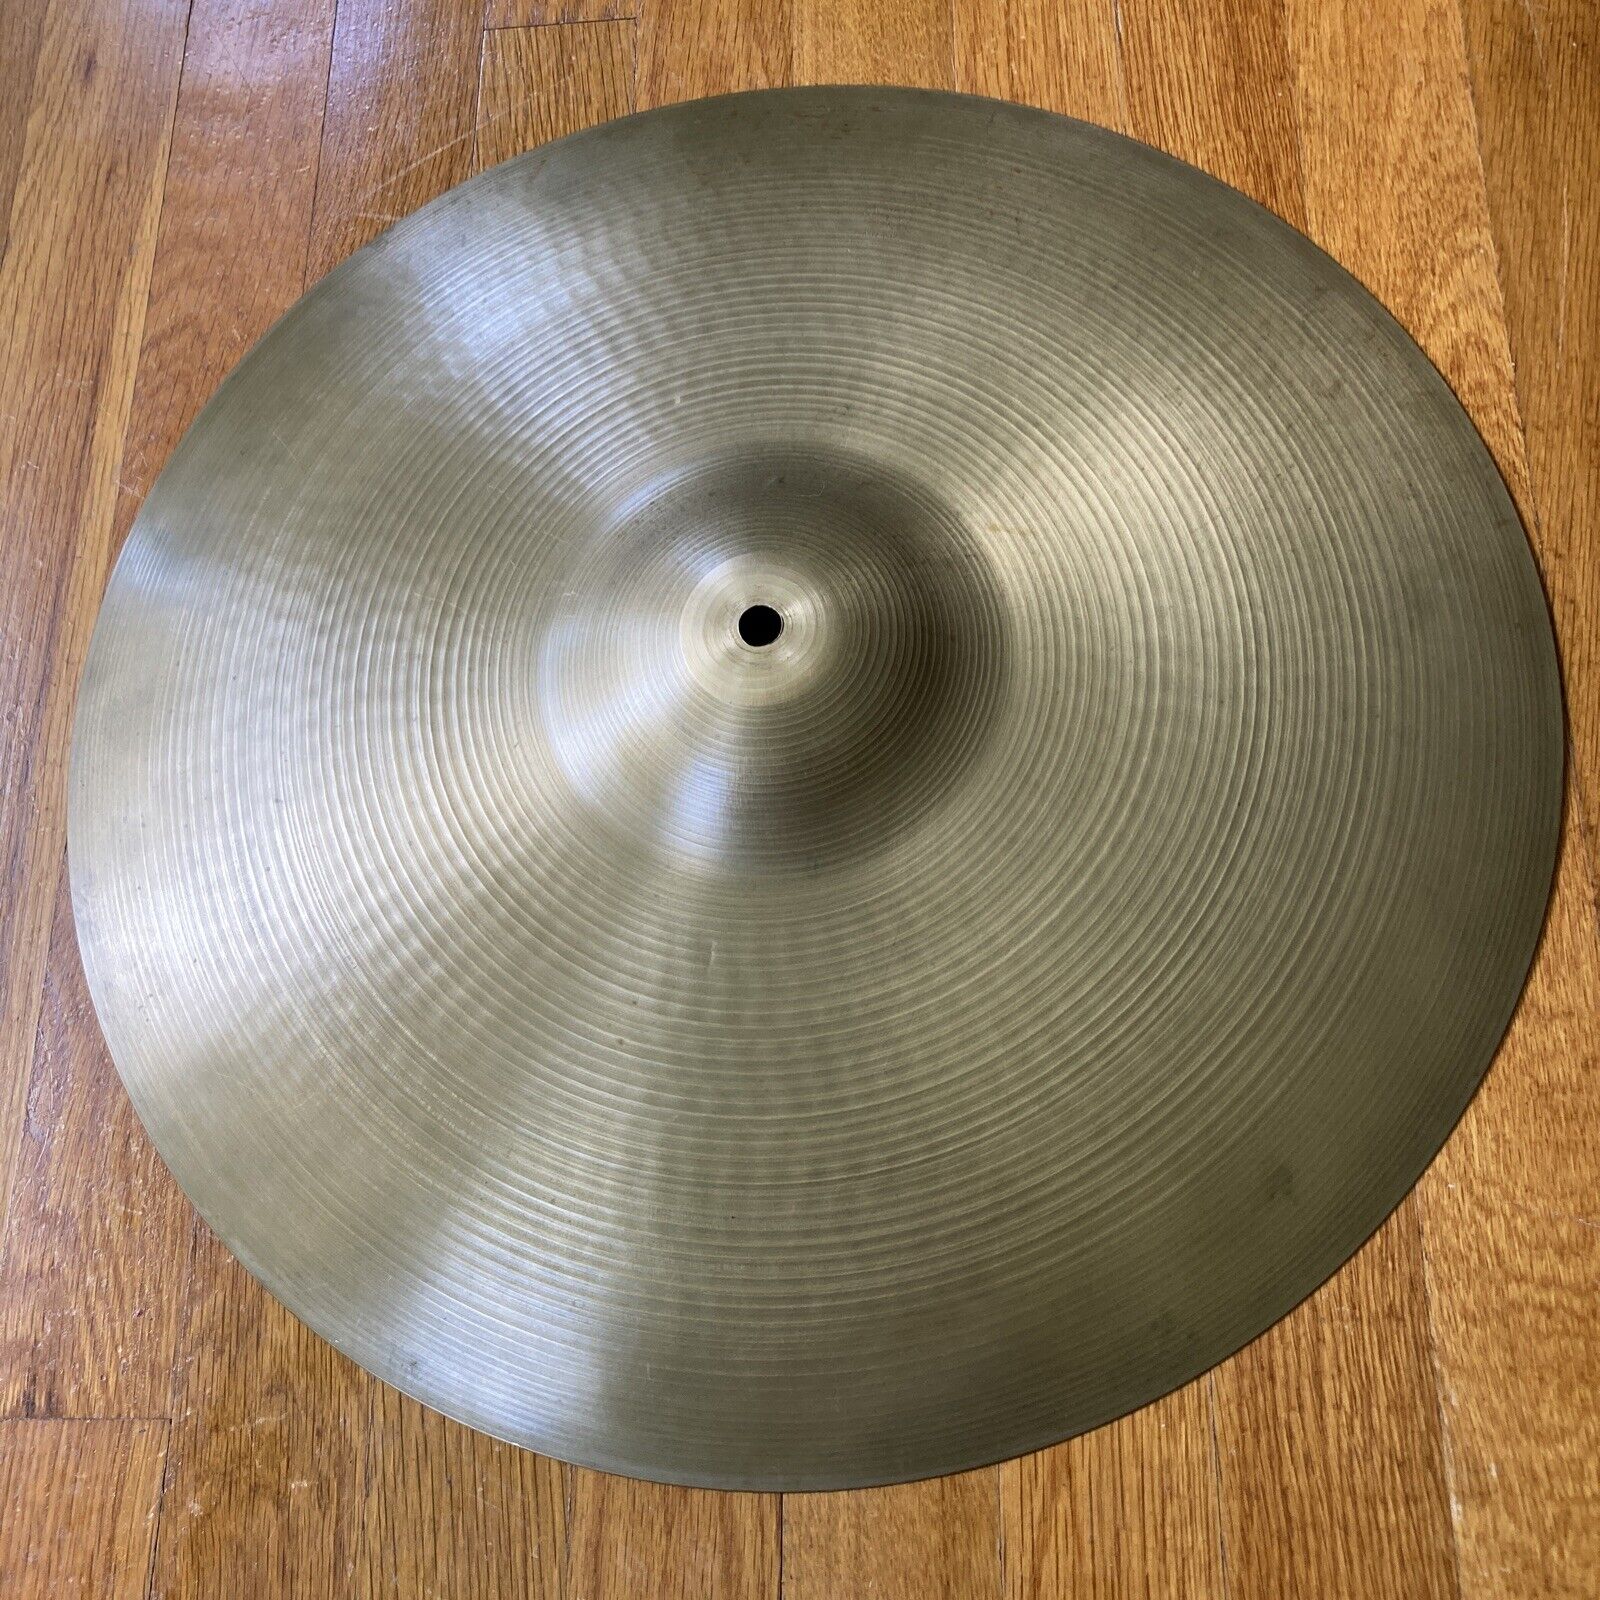 Zildjian Vintage A 18" Crash Cymbal (1505g) No Cracks Nice Patina